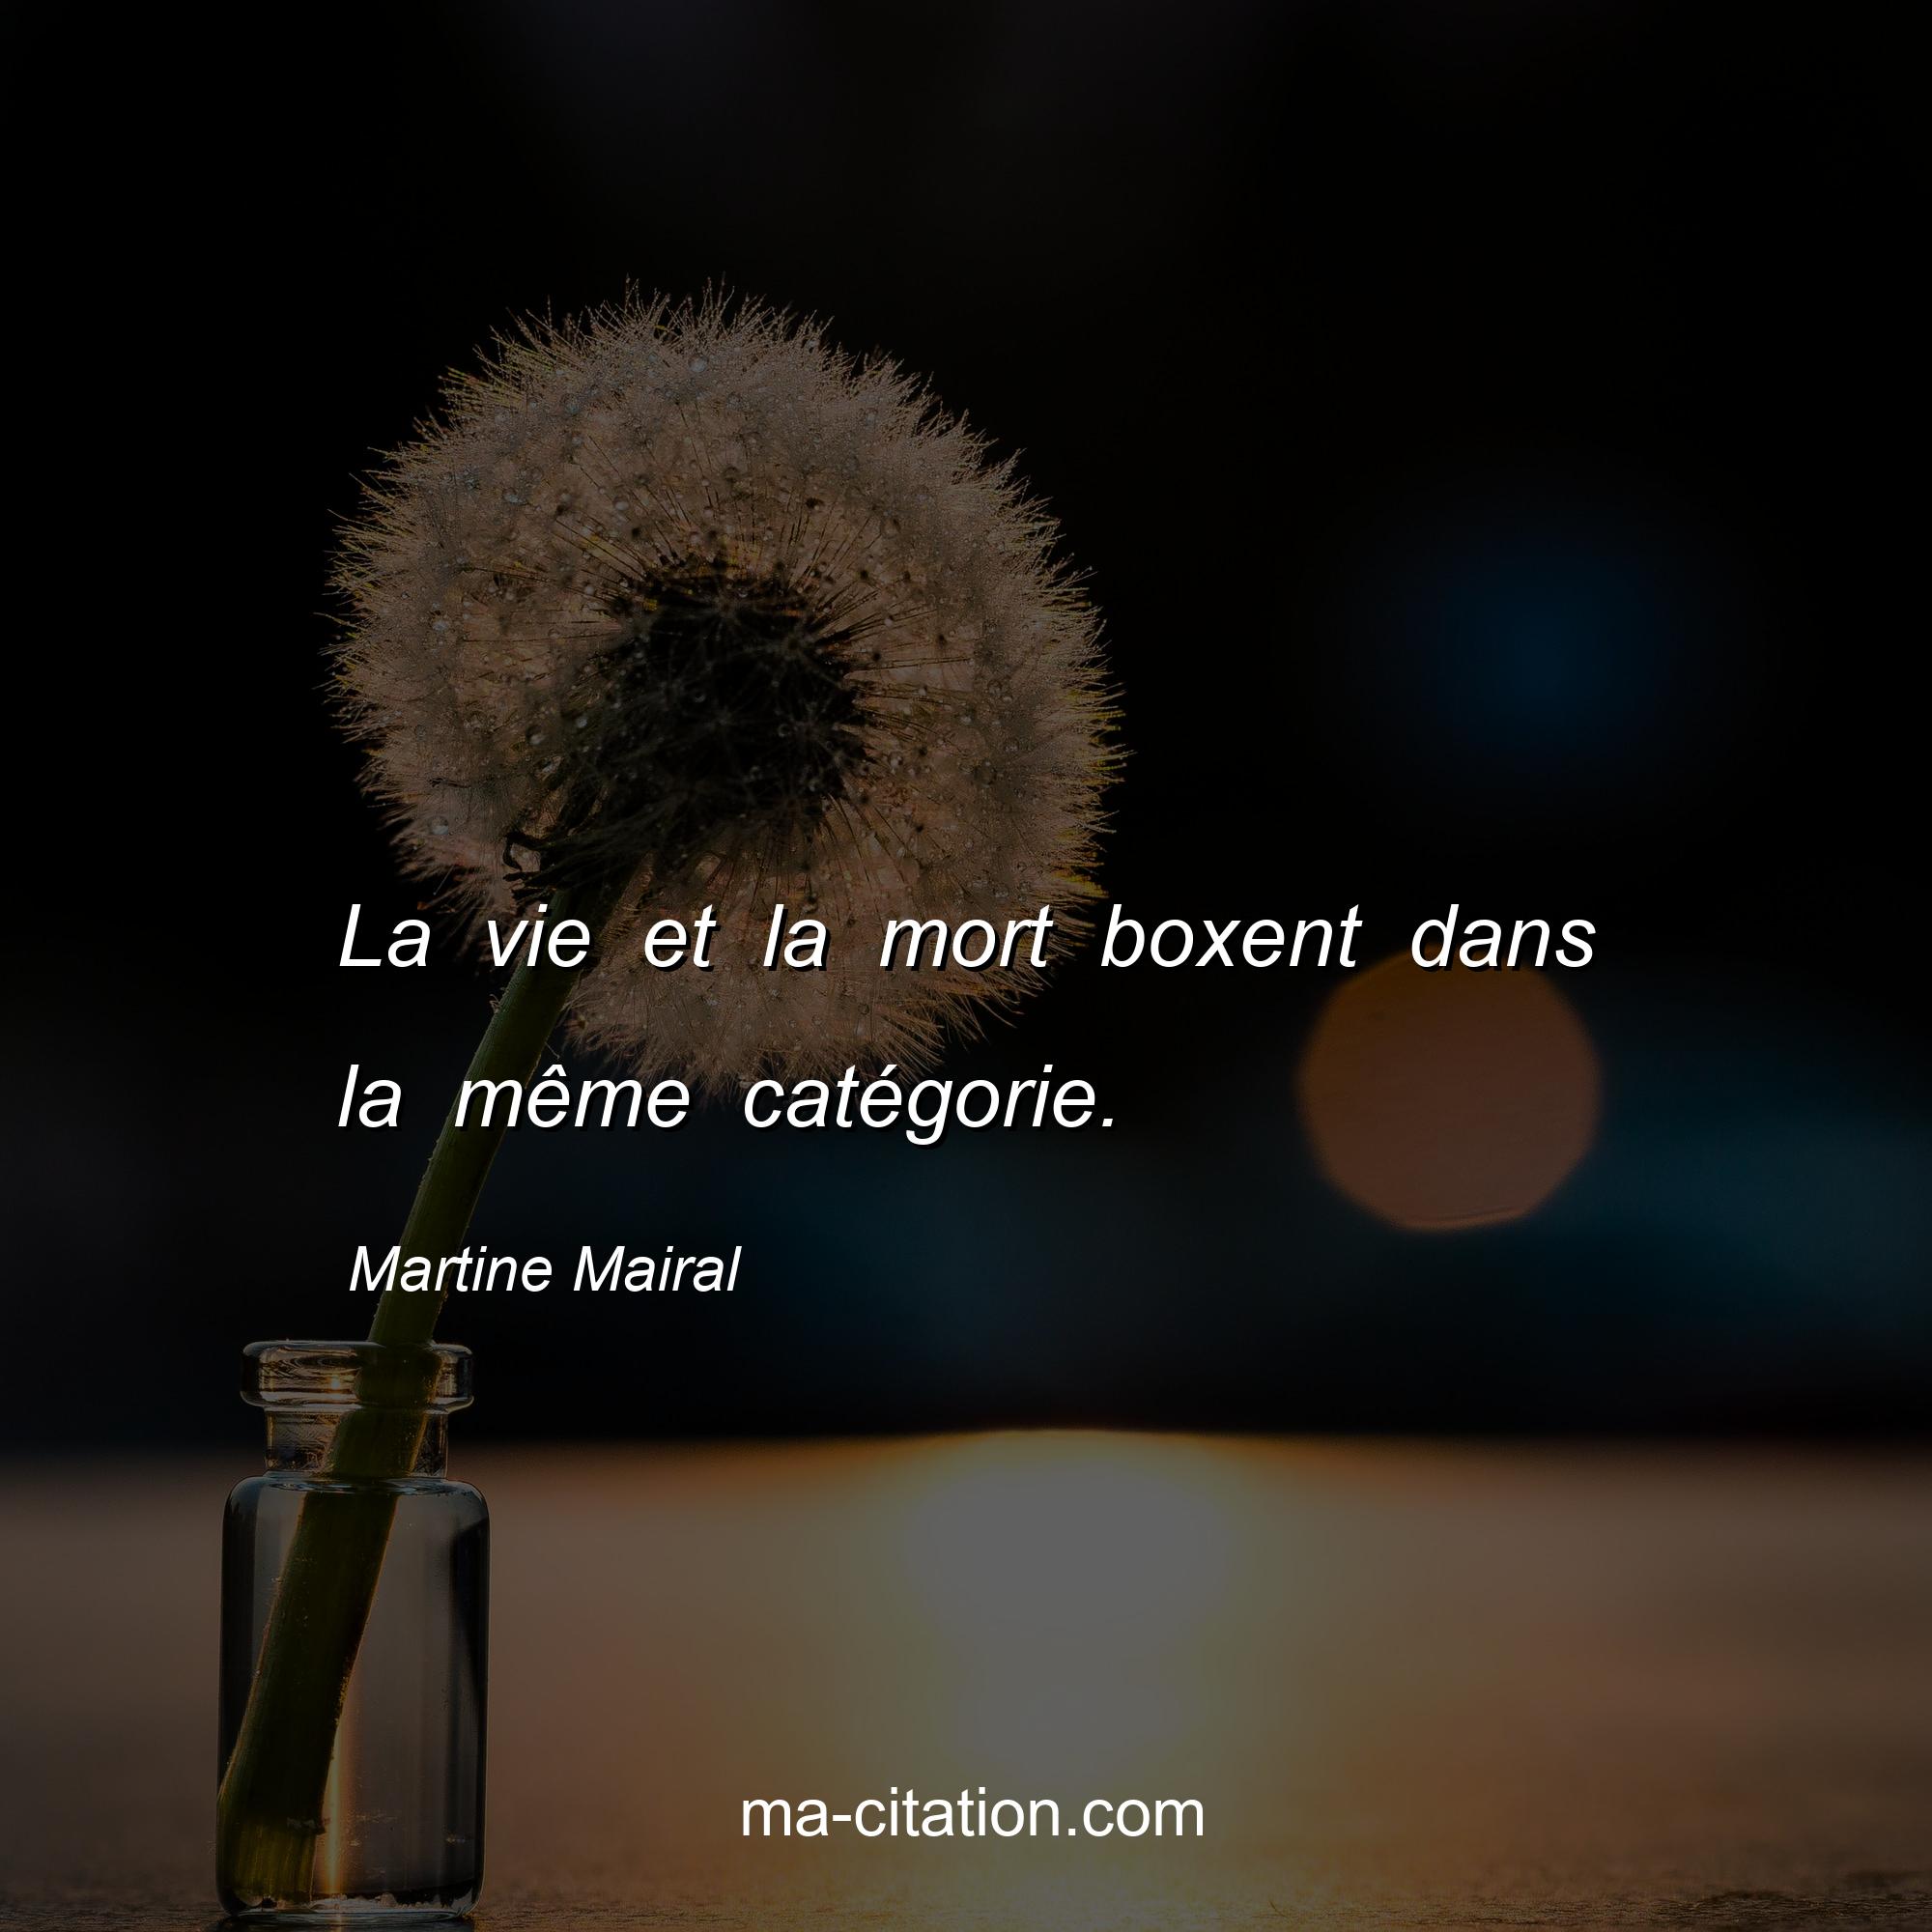 Martine Mairal : La vie et la mort boxent dans la même catégorie.